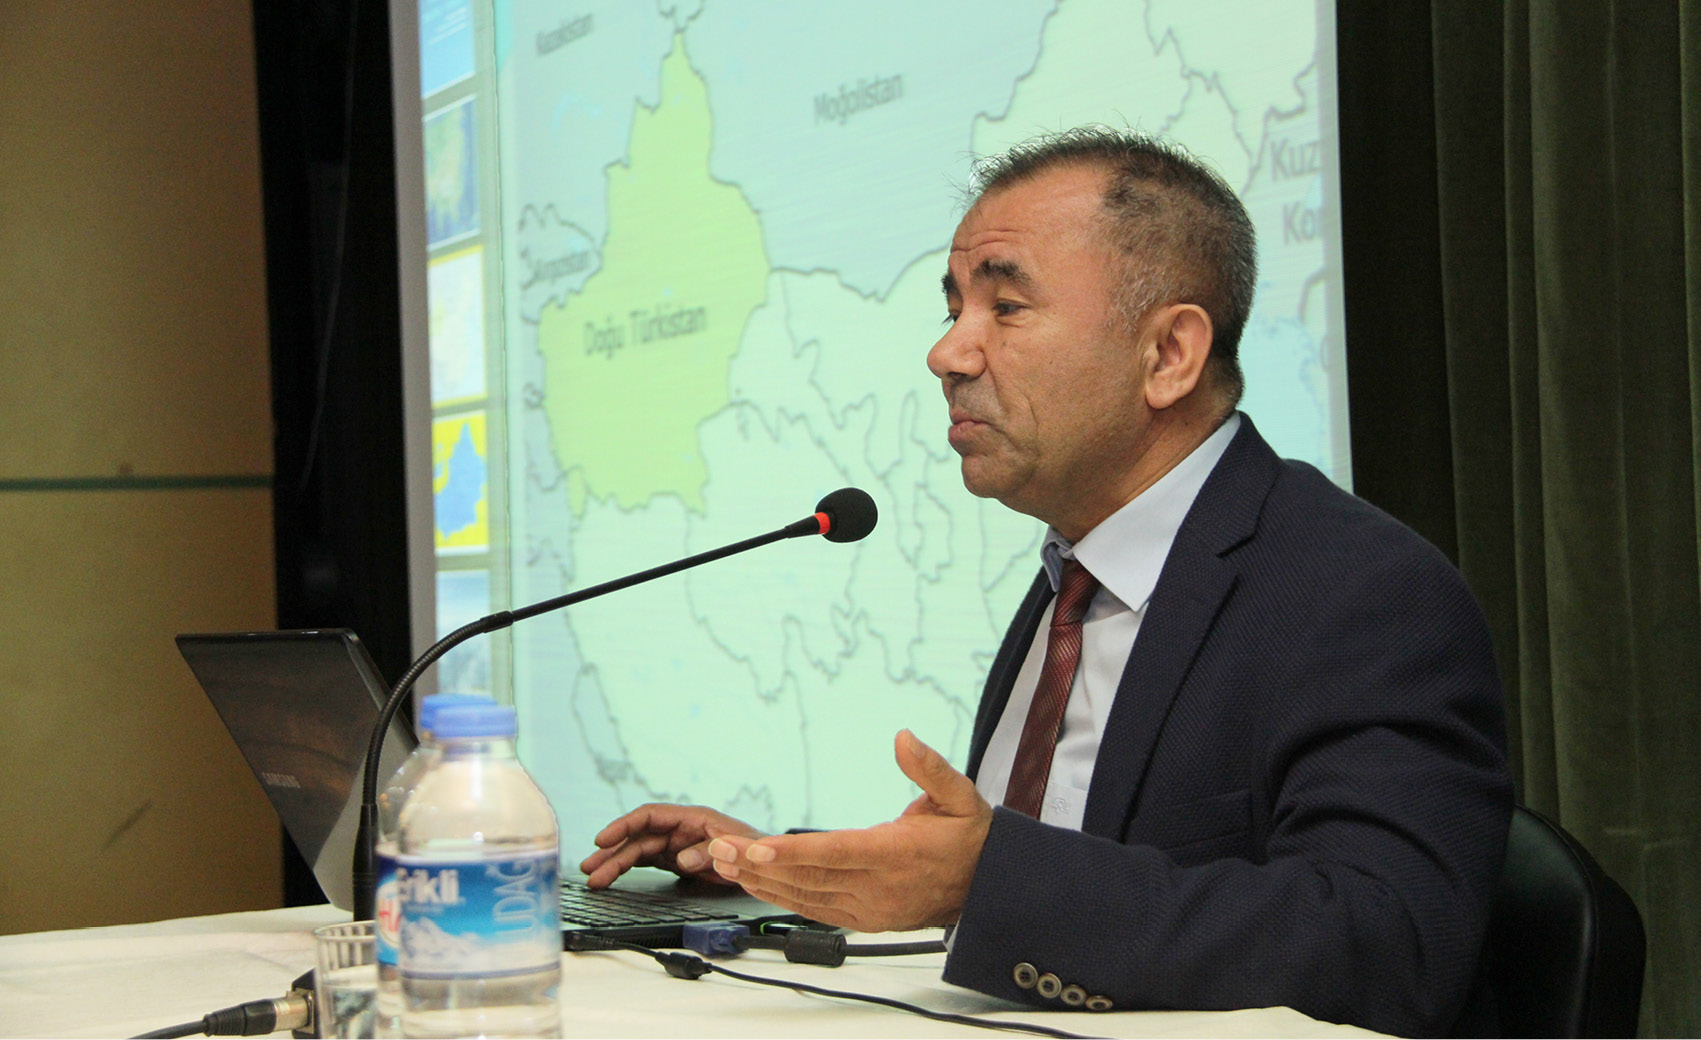 Güncel Gelişmeler Işığında Doğu Türkistan” Konulu Konferans Düzenlendi - KLU - Basın Yayın ve Halkla İlişkiler Birimi #iyileşeceğiz